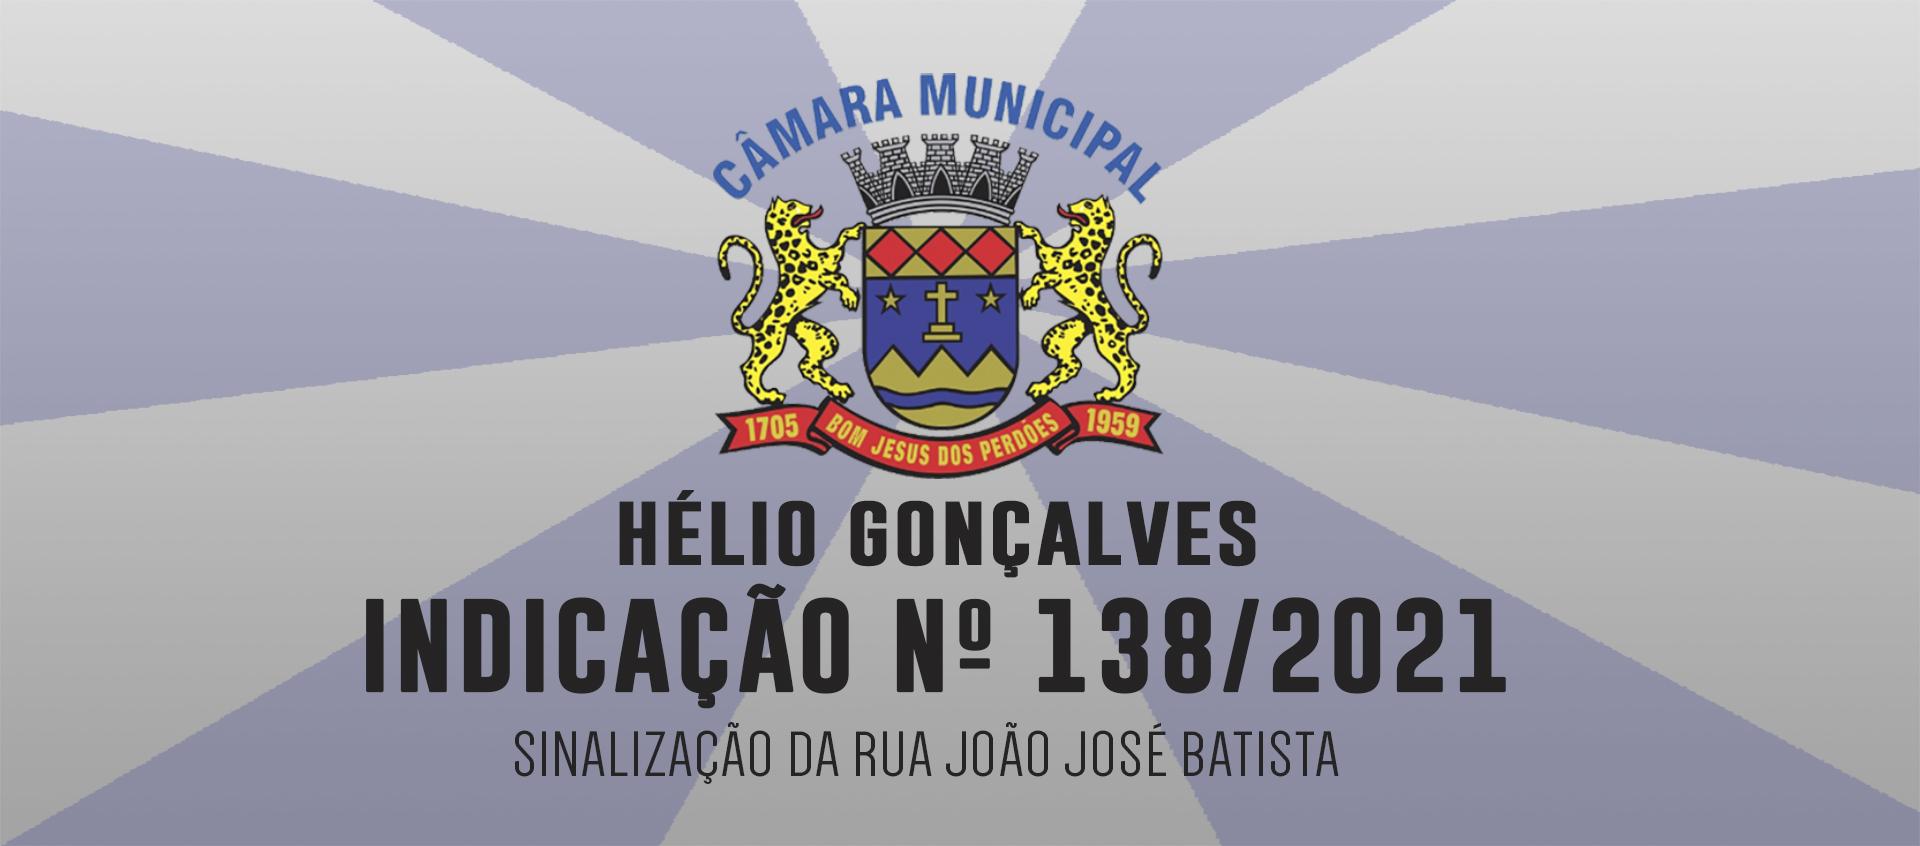 Indicação 138/2021 - Sinalização Rua João José Batista - Hélio